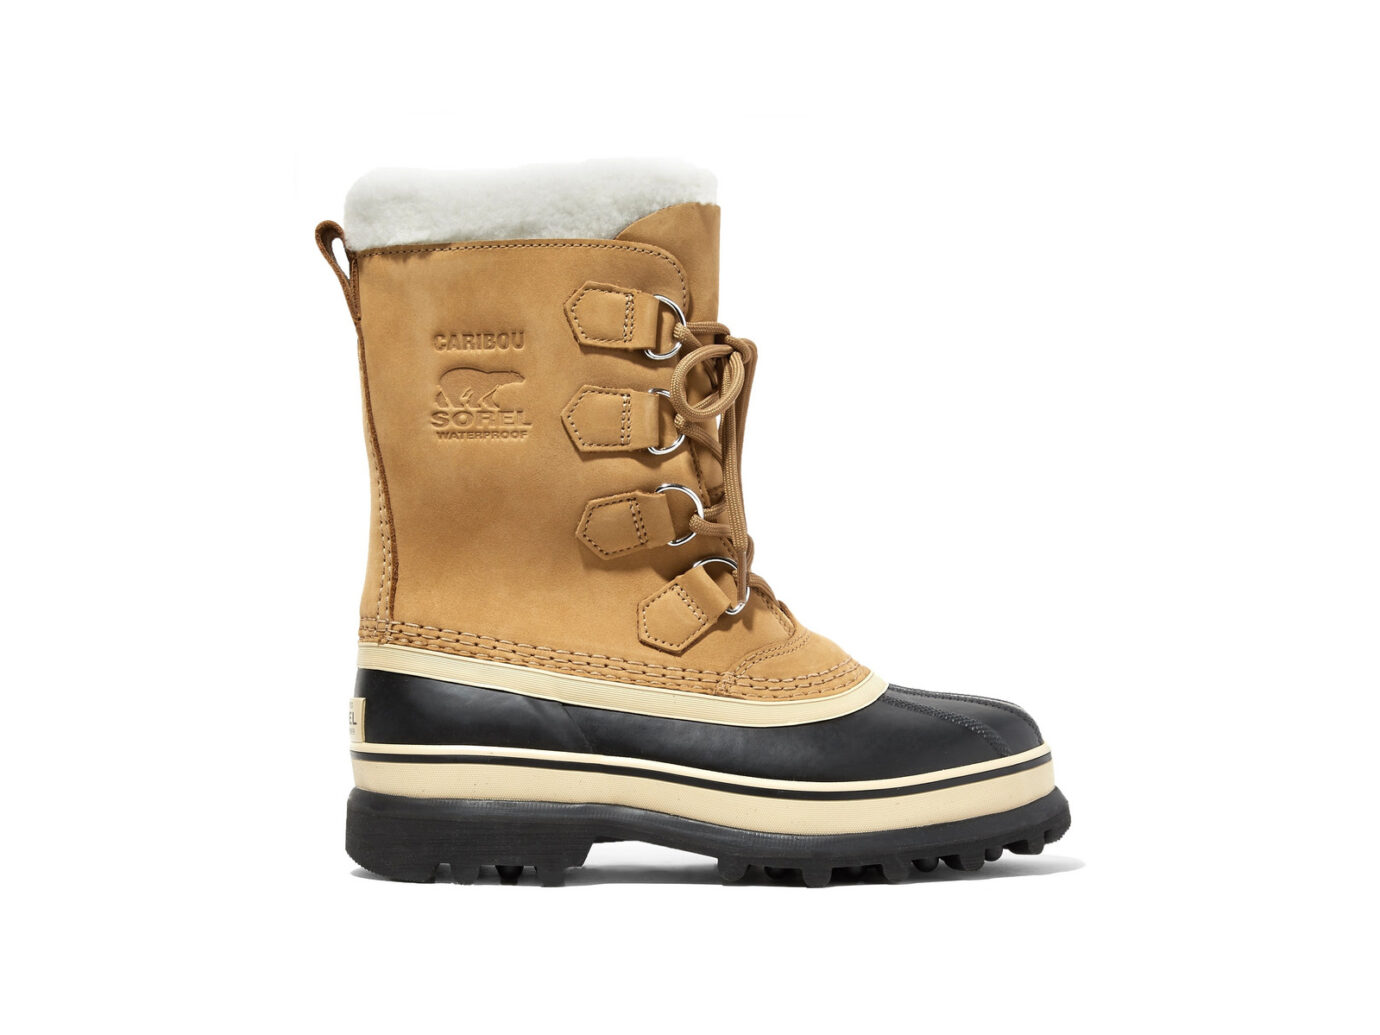 cute short winter boots